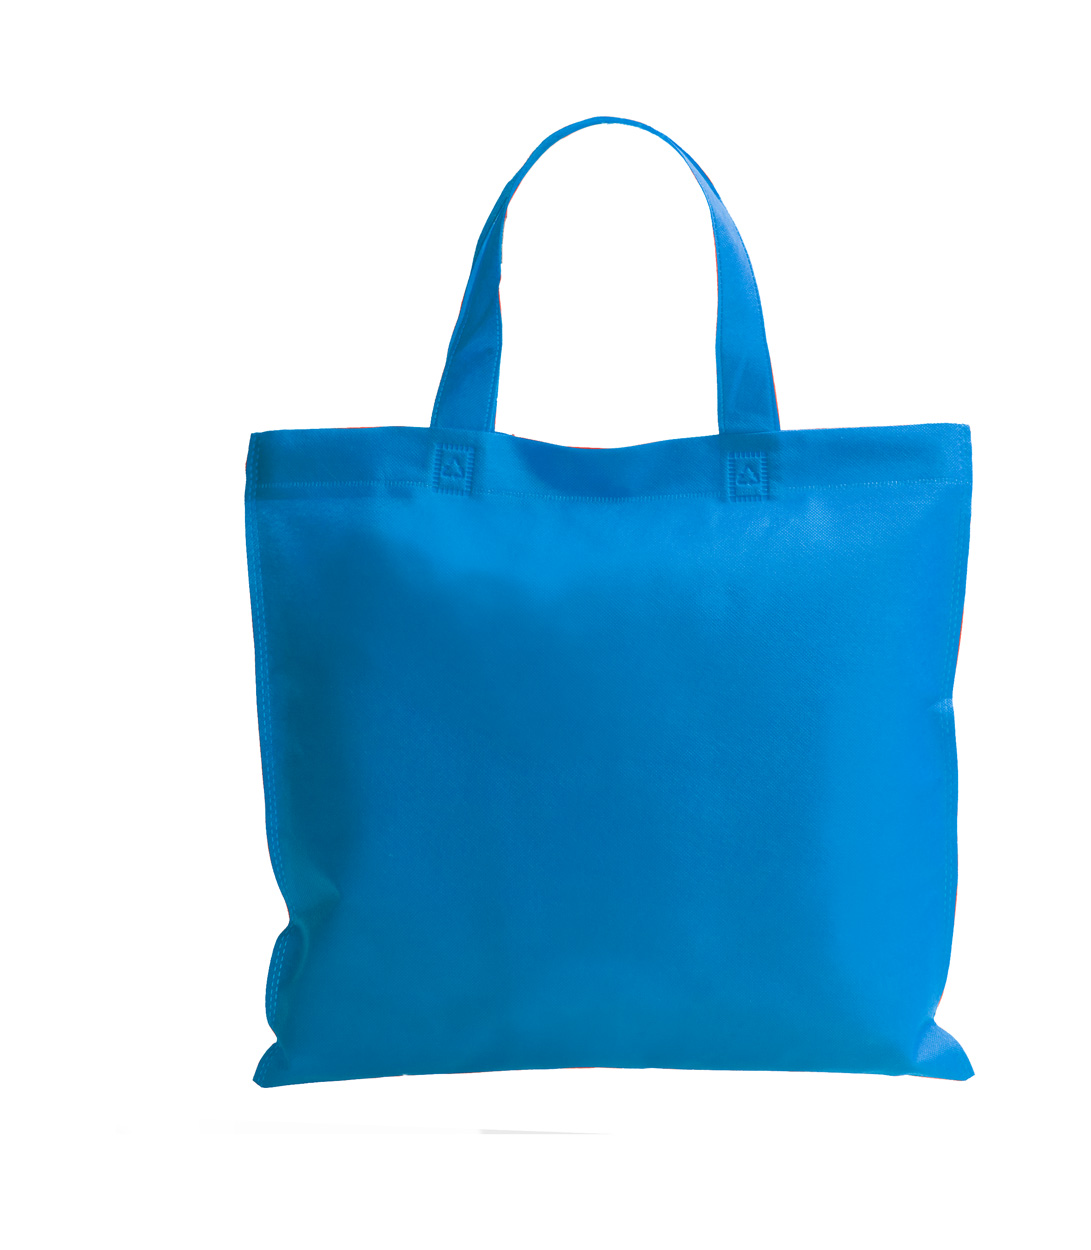 Nox bag - baby blue